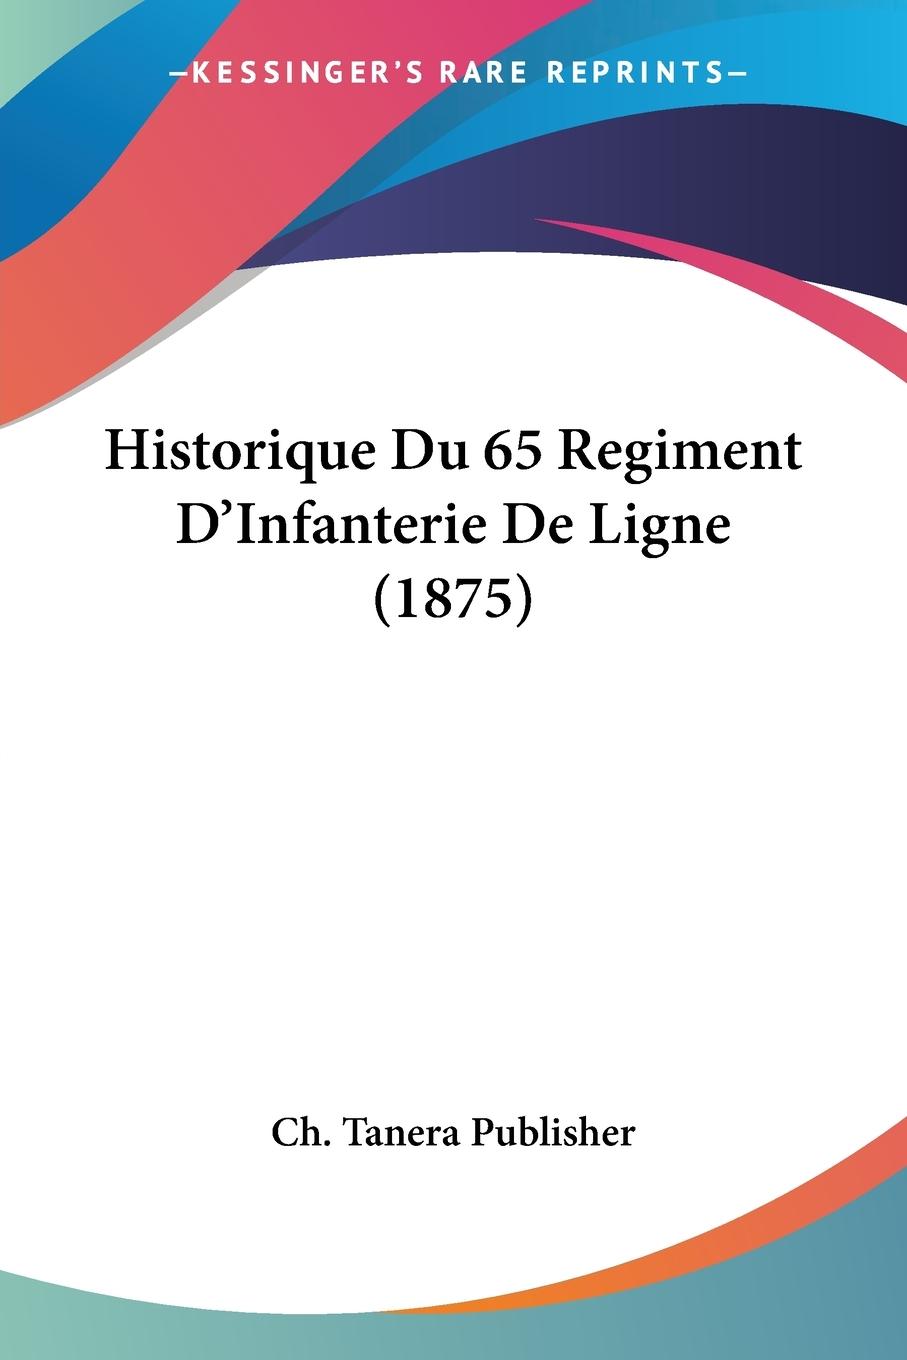 Historique Du 65 Regiment D Infanterie De Ligne (1875) - Ch. Tanera Publisher